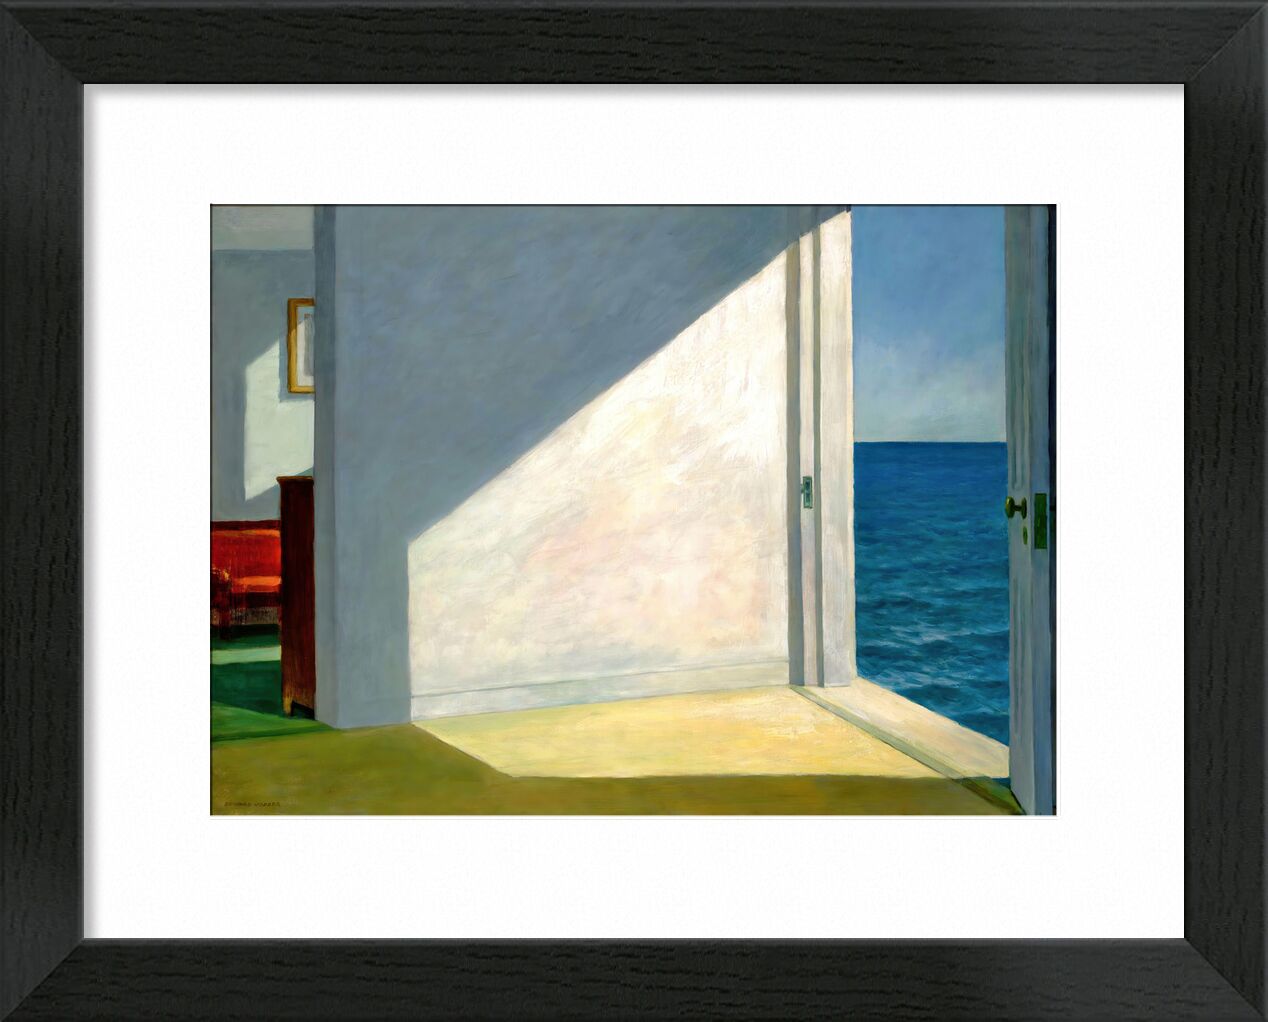 Habitaciones Junto al Mar - Edward Hopper desde Bellas artes, Prodi Art, mar, playa, sol, verano, cielo, fiesta, Eward Hopper